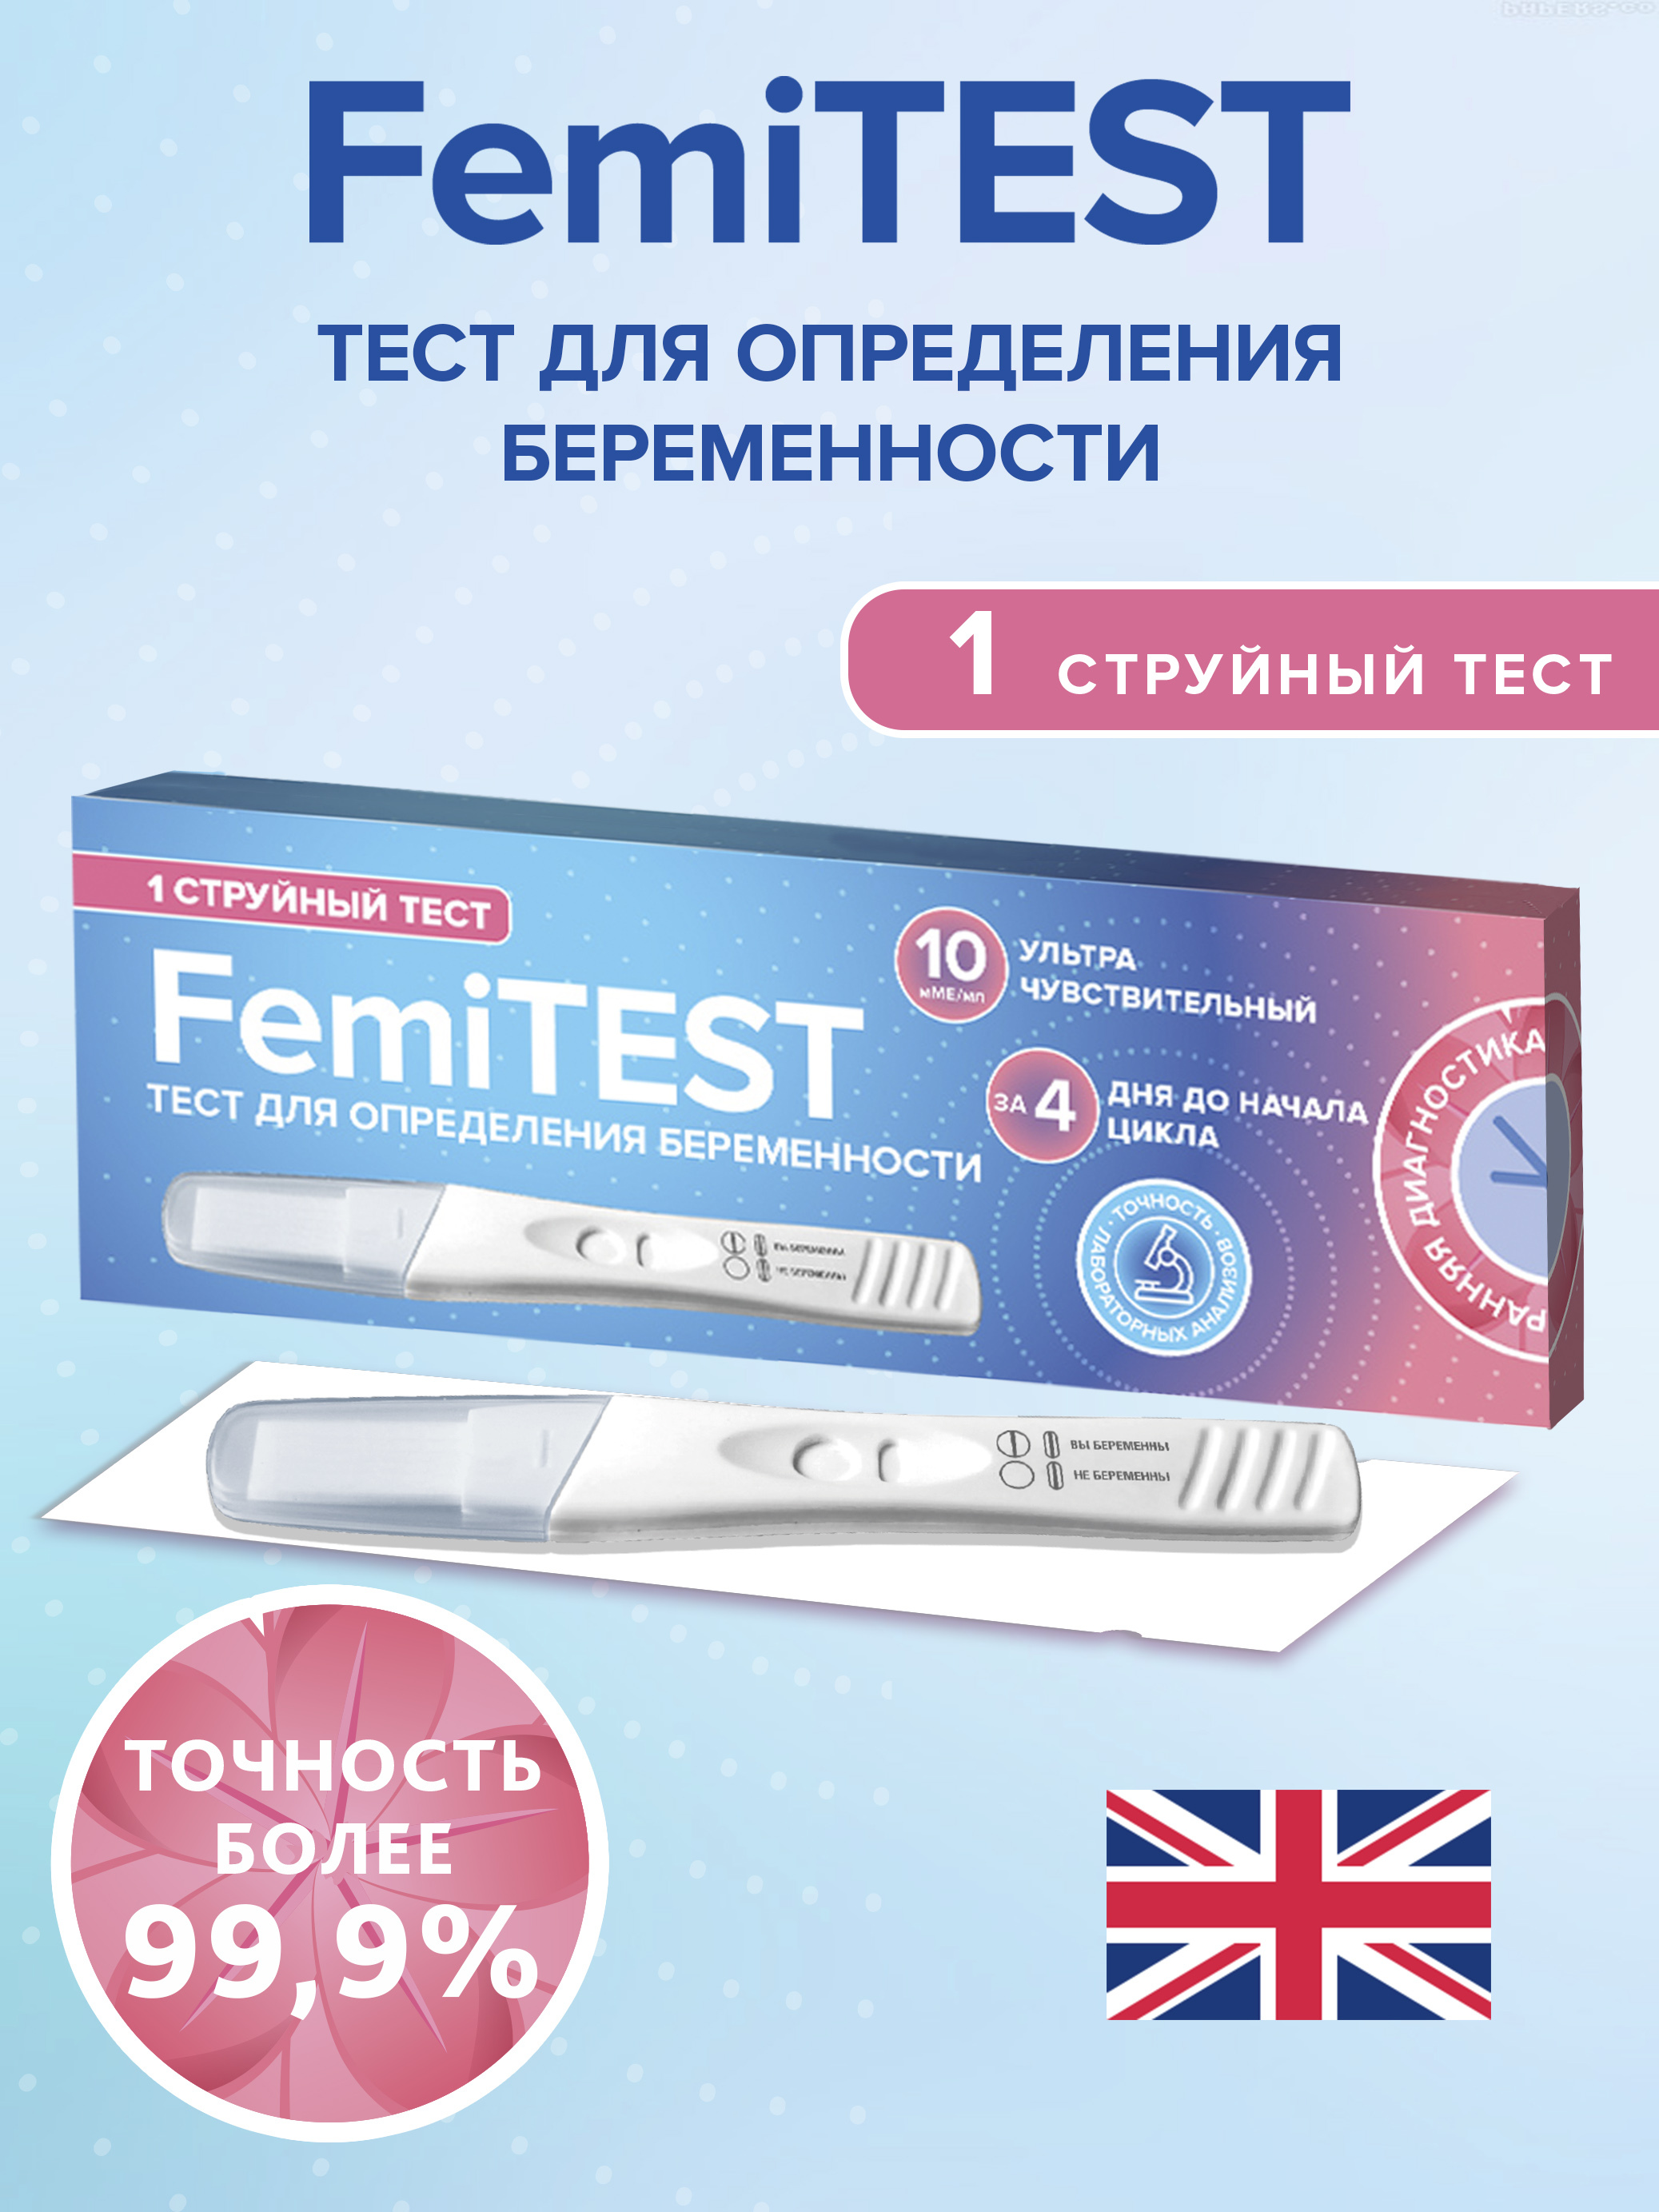 Чувствительность теста на беременность 10 мме мл. Femitest Ultra 10 ММЕ/мл. ФЕМИТЕСТ ультра эксперт струйный. Femitest Ultra чувствительность. Femitest Ultra 10 ММЕ/мл тест полоска.